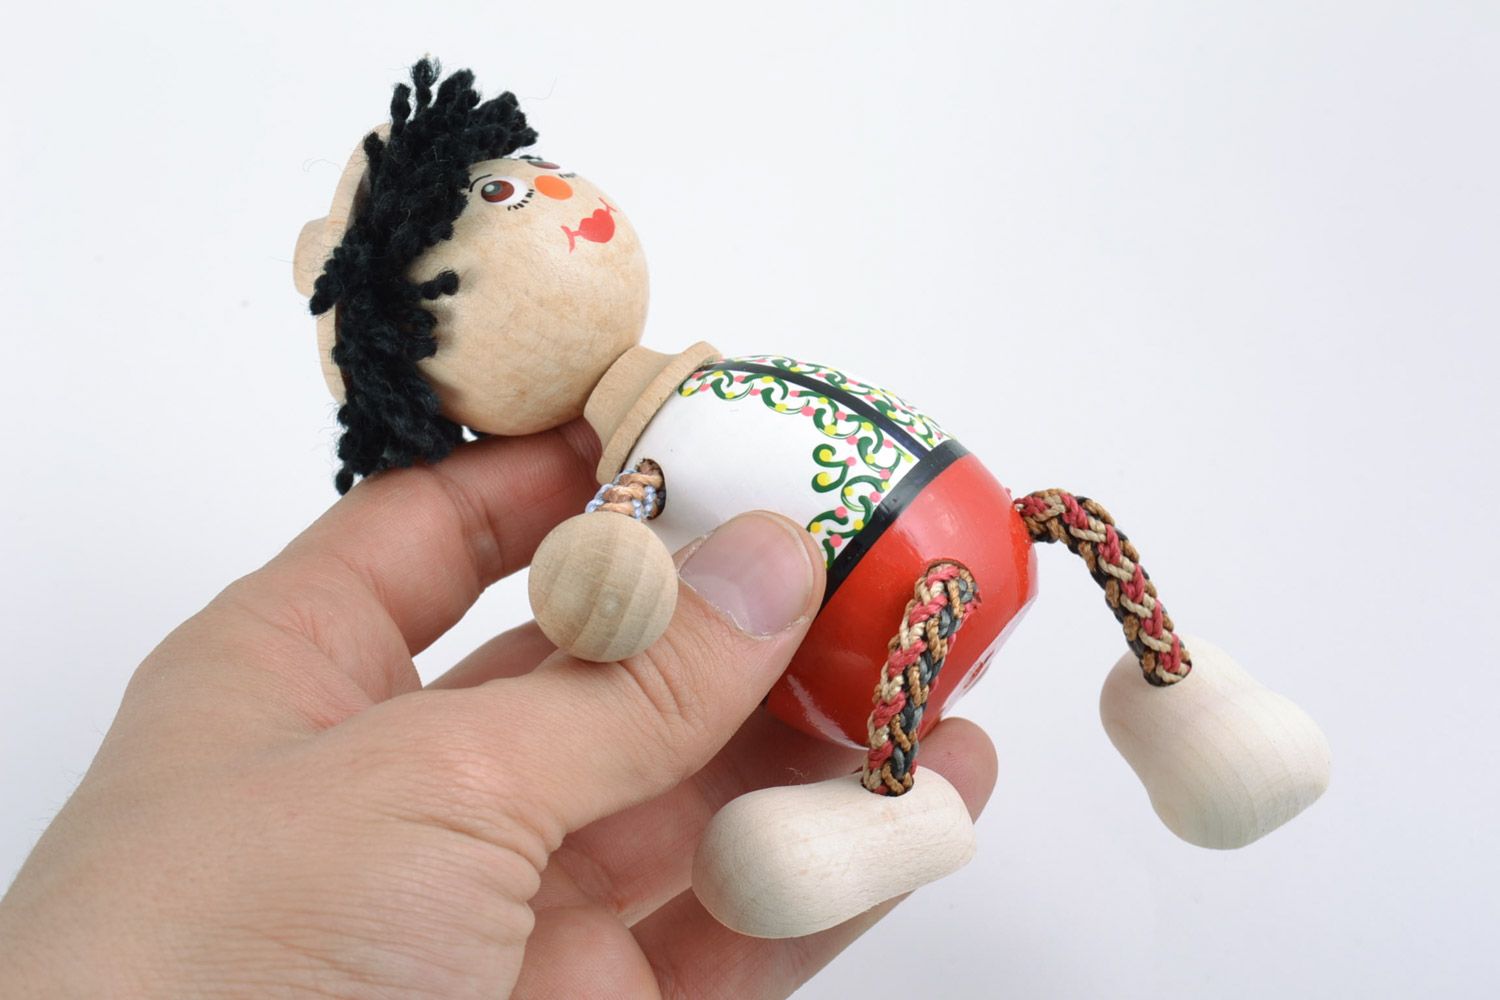 Небольшая игрушка из дерева расписанная красками в виде мальчика ручной работы фото 2